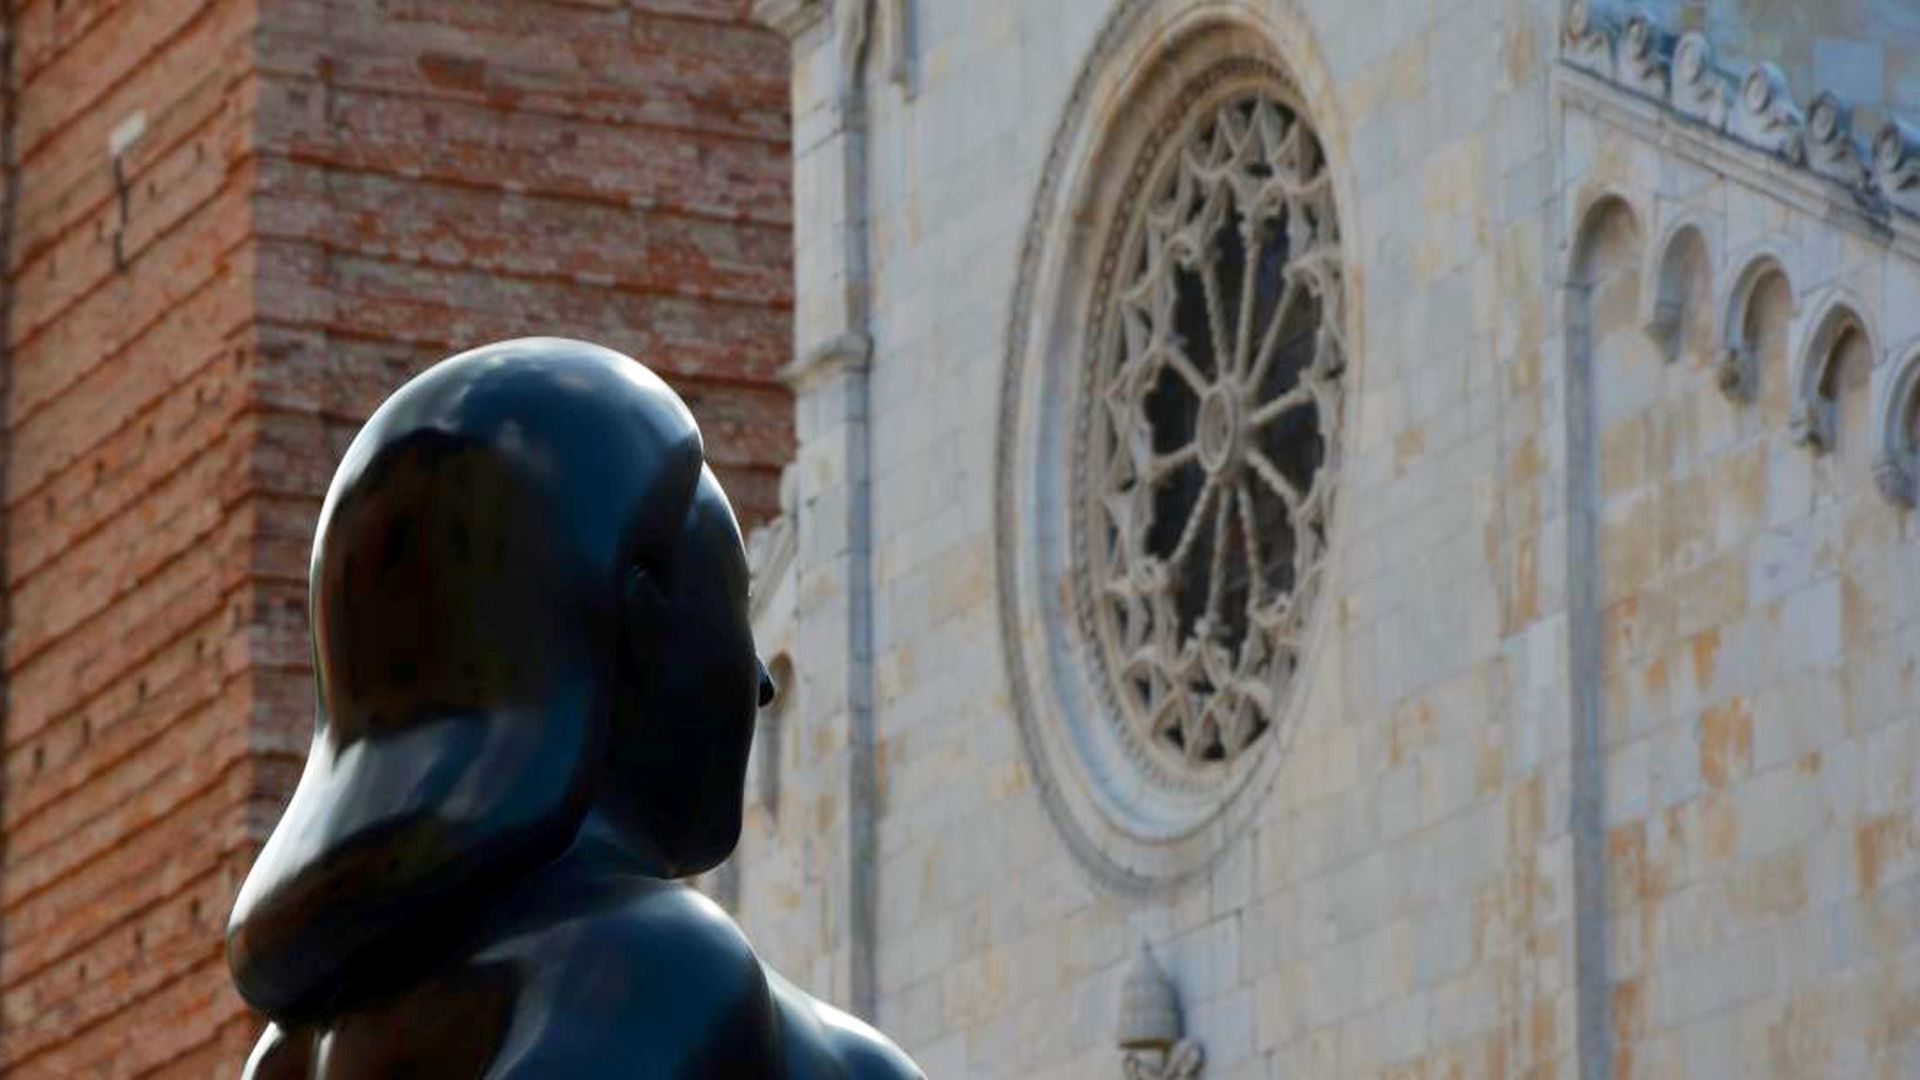 scultura di Botero di fronte al duomo di piertasanta